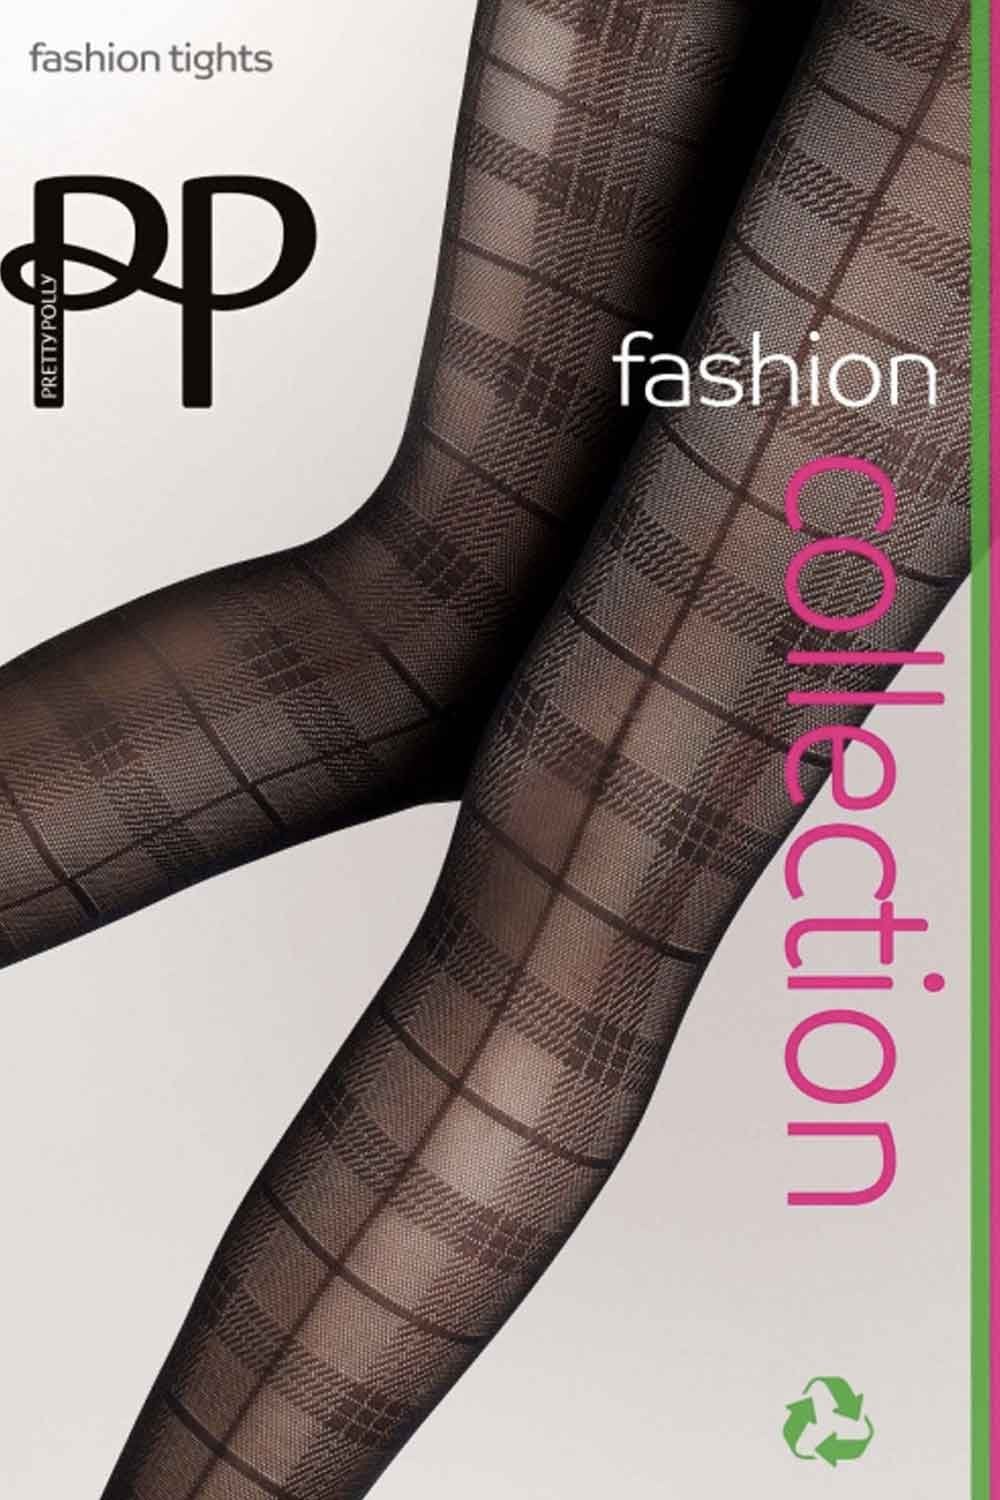 Женственные колготки Tartan с геометрическим рисунком идеально создадут  стильный образ. Созданы по запатентованной технологии OEKO-Tex, что подтверждает их экологичное производство. Балуйте свои ножки!